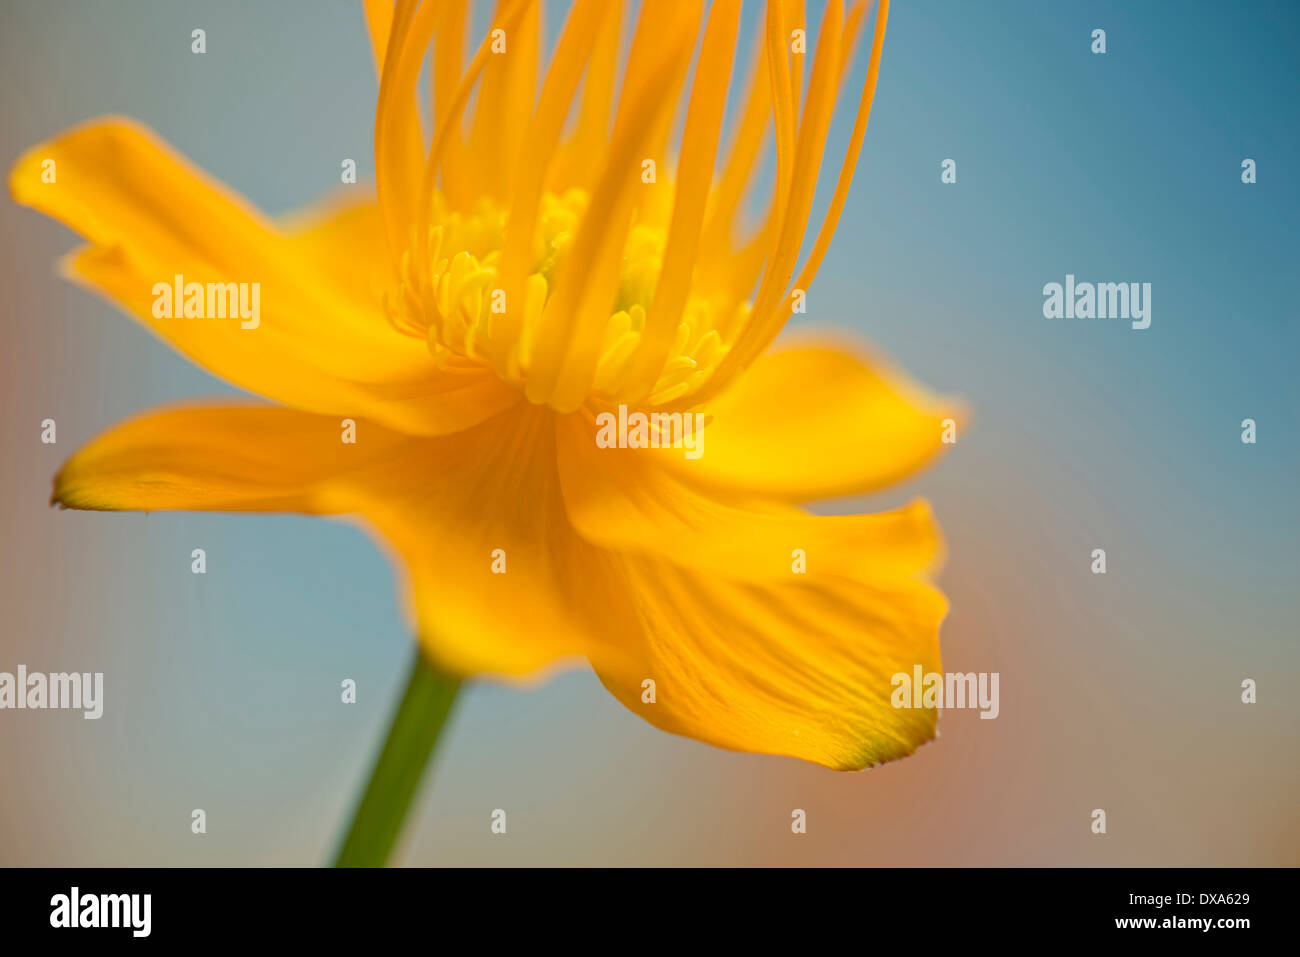 Globeflower, Trollius chinensis, yellow flower showing stamens and stigma. Stock Photo